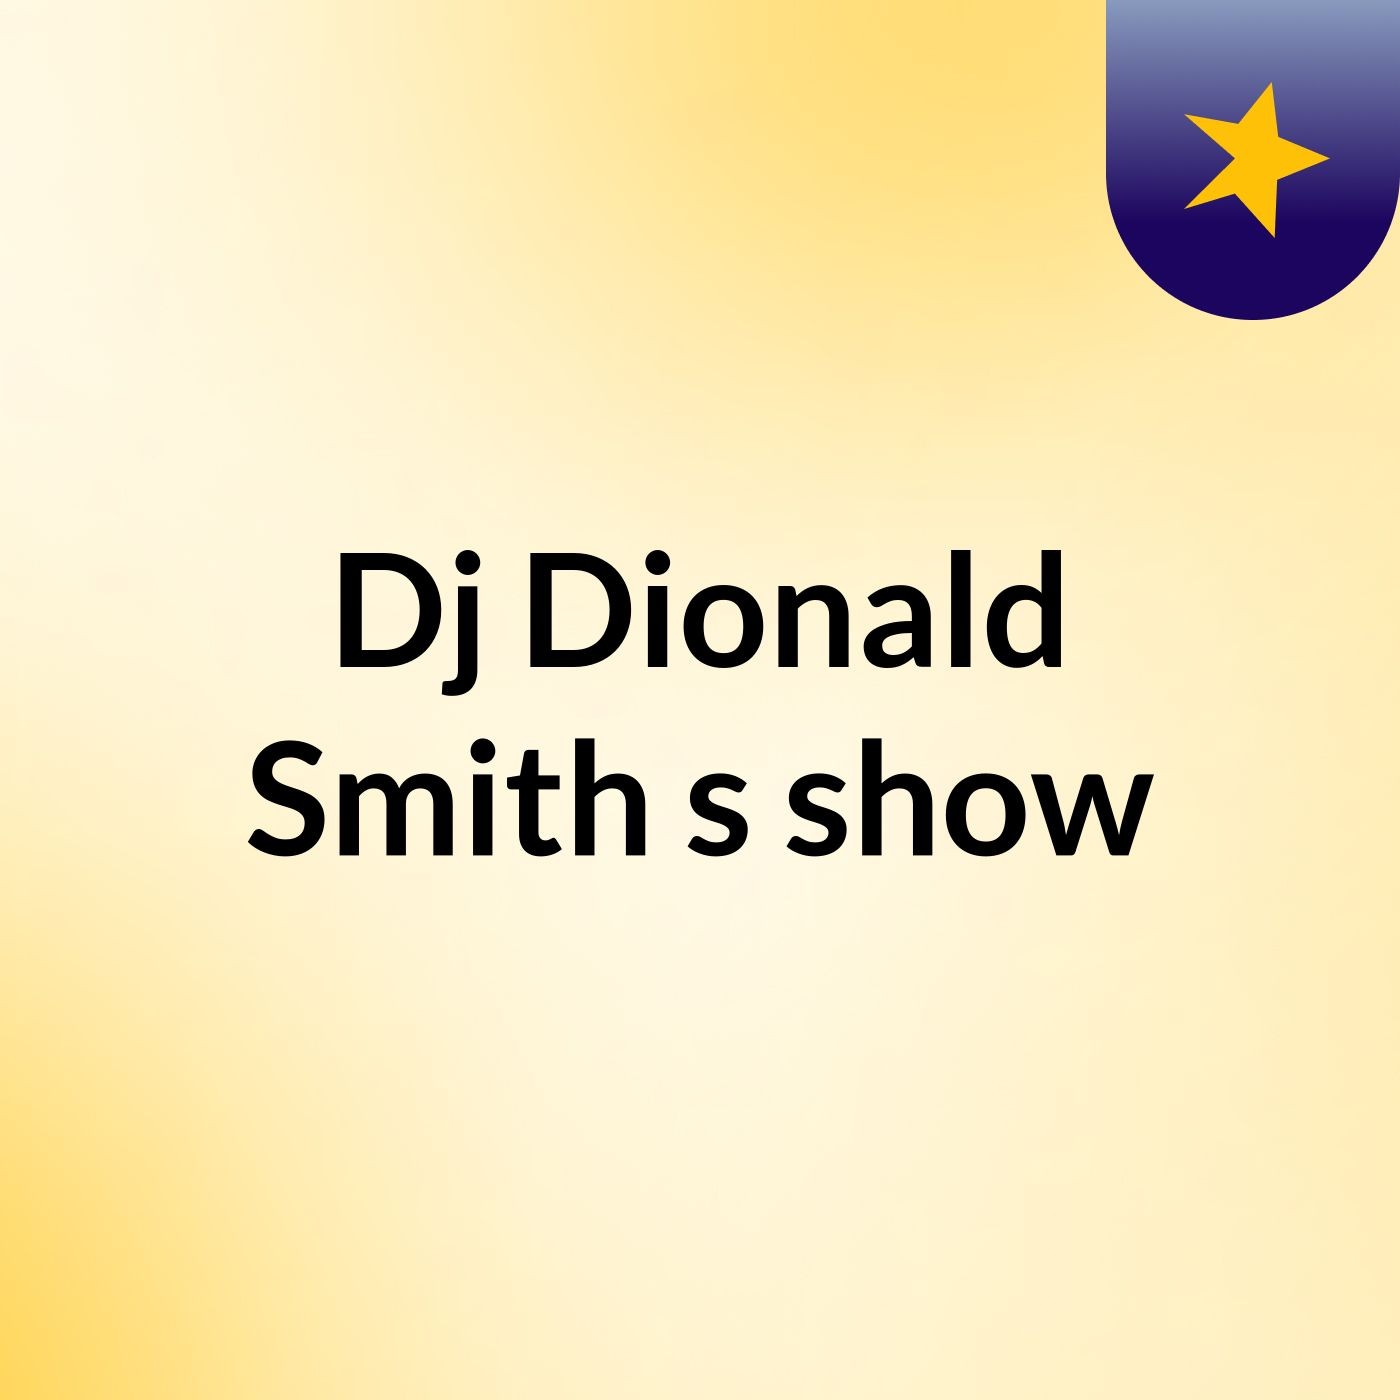 Episódio 6 - Dj'Dionald Smith's show